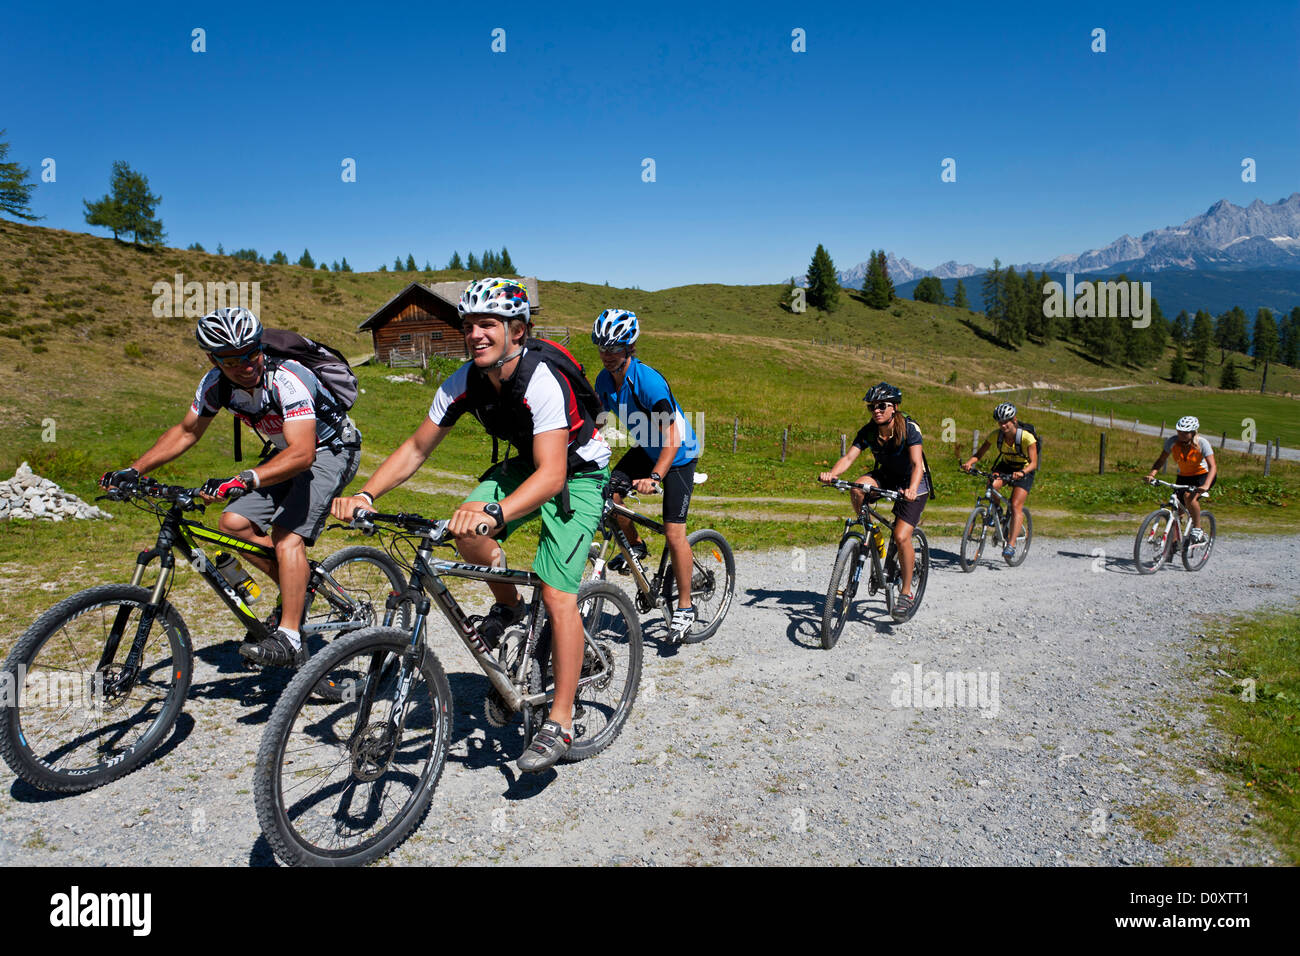 Autriche Europe Flachau adolescent cycliste le vélo Vélo VTT homme femme groupe sport fun Banque D'Images